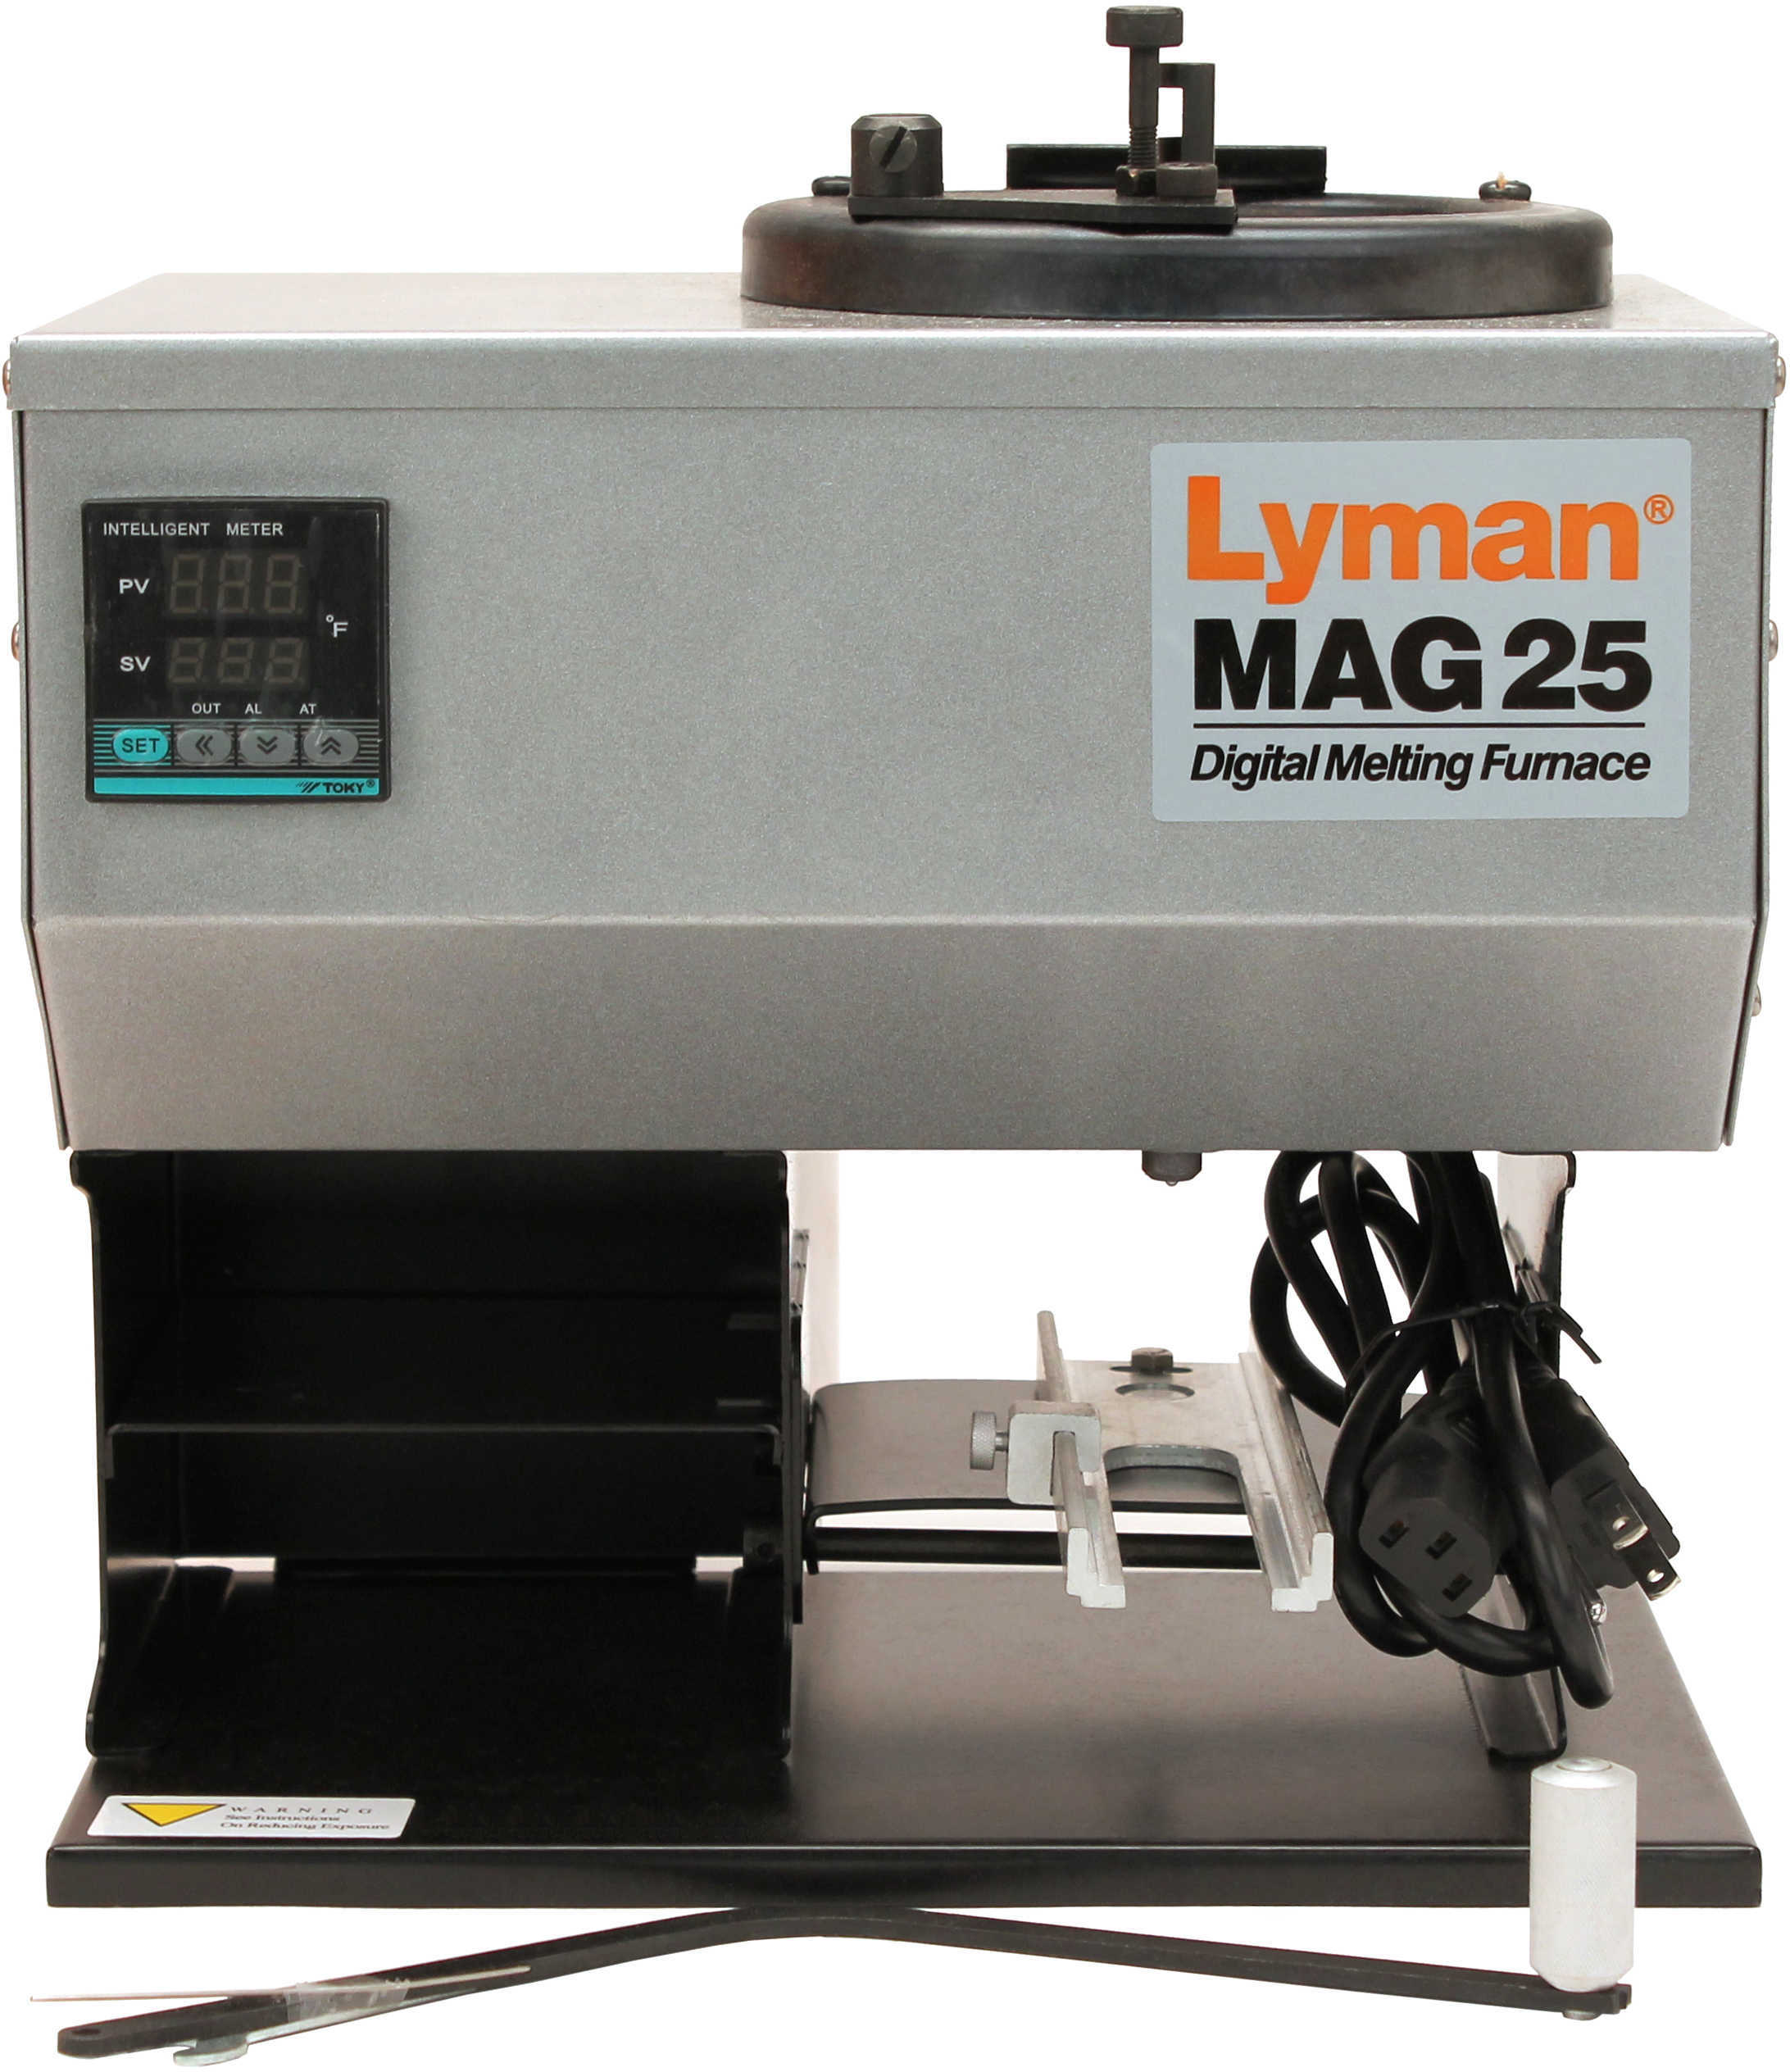 Lyman Mag 25 Digital Melting Furnace Md: 2800382